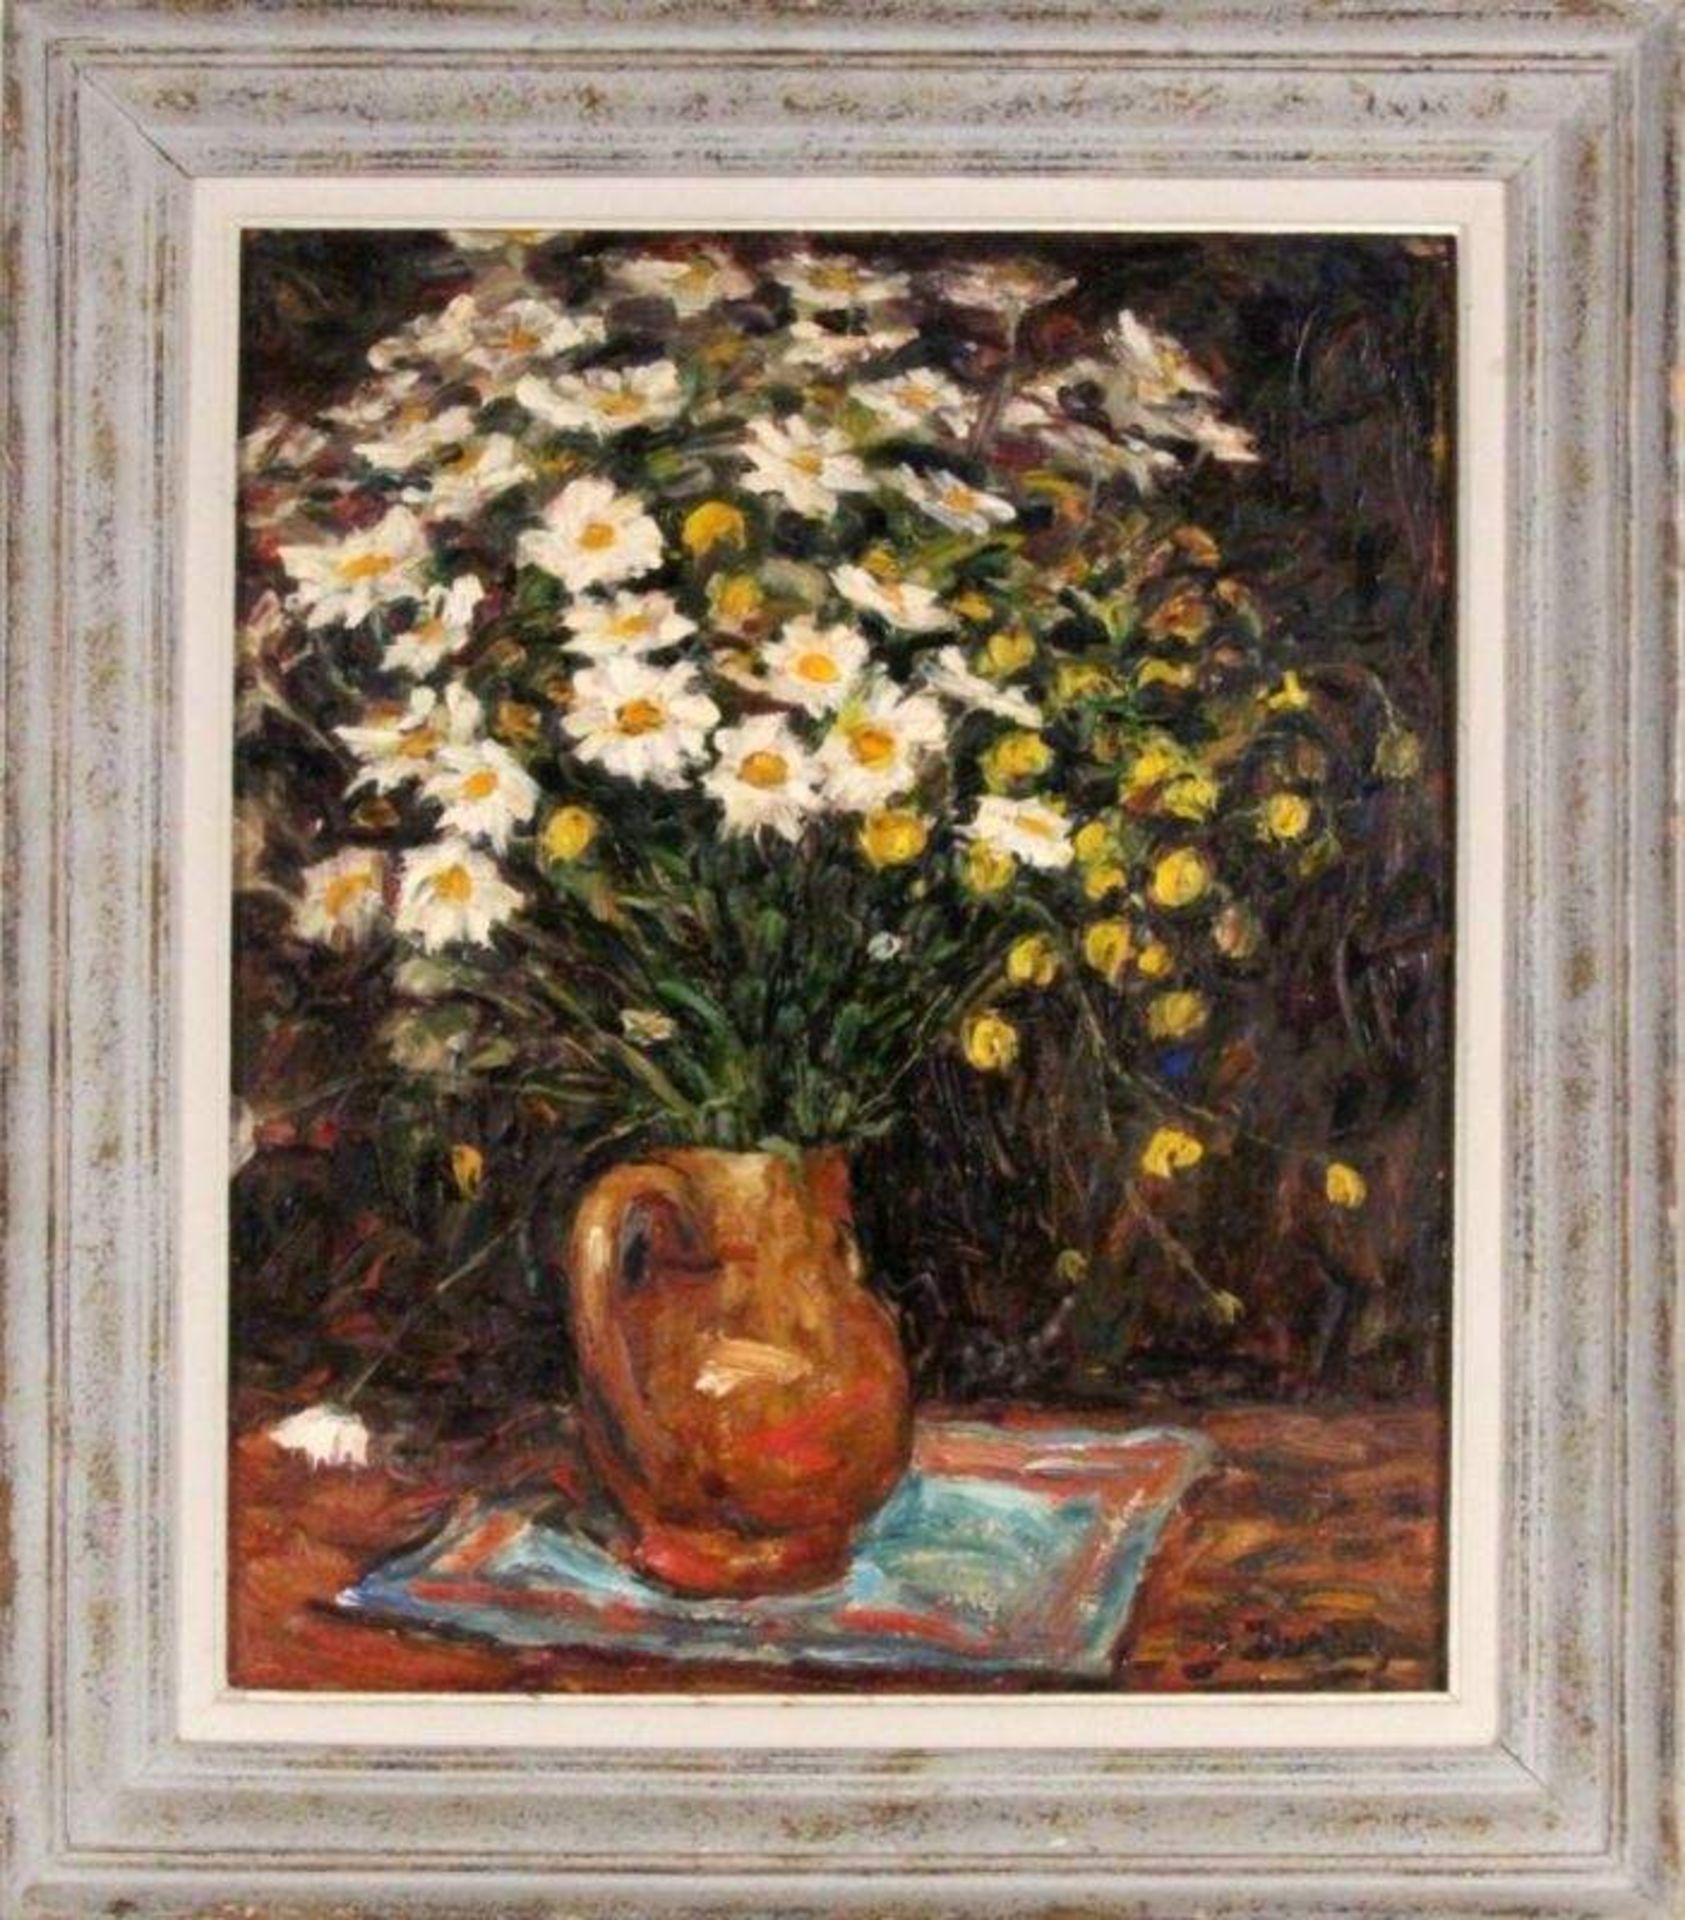 DURIEZ, JULESFrankreich 1900 - 1993 Blumen in der Vase. Öl/Holz, signiert. 65x54cm DURIEZ, - Bild 2 aus 3